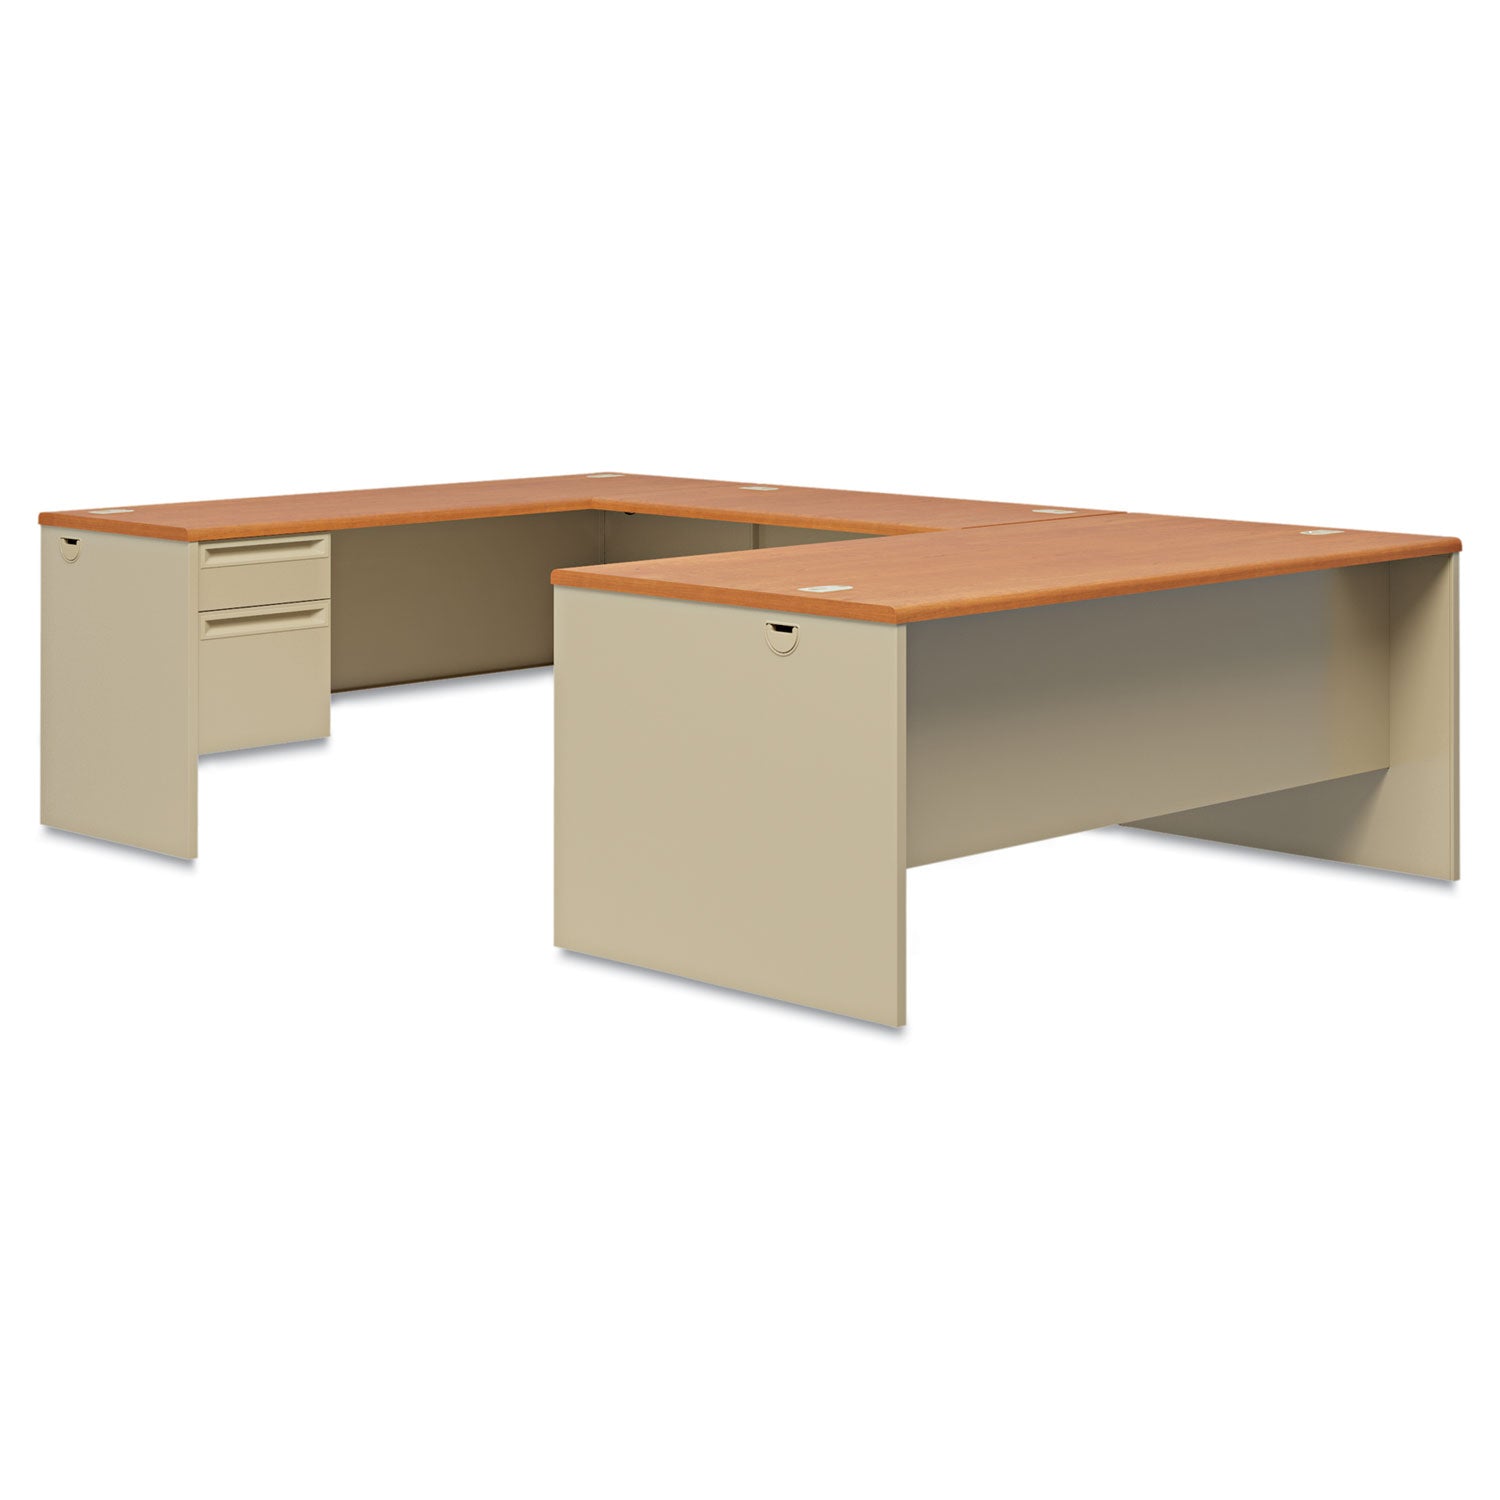 38000 Series Right Pedestal Desk, 72" x 36" x 29.5", Harvest/Putty - 